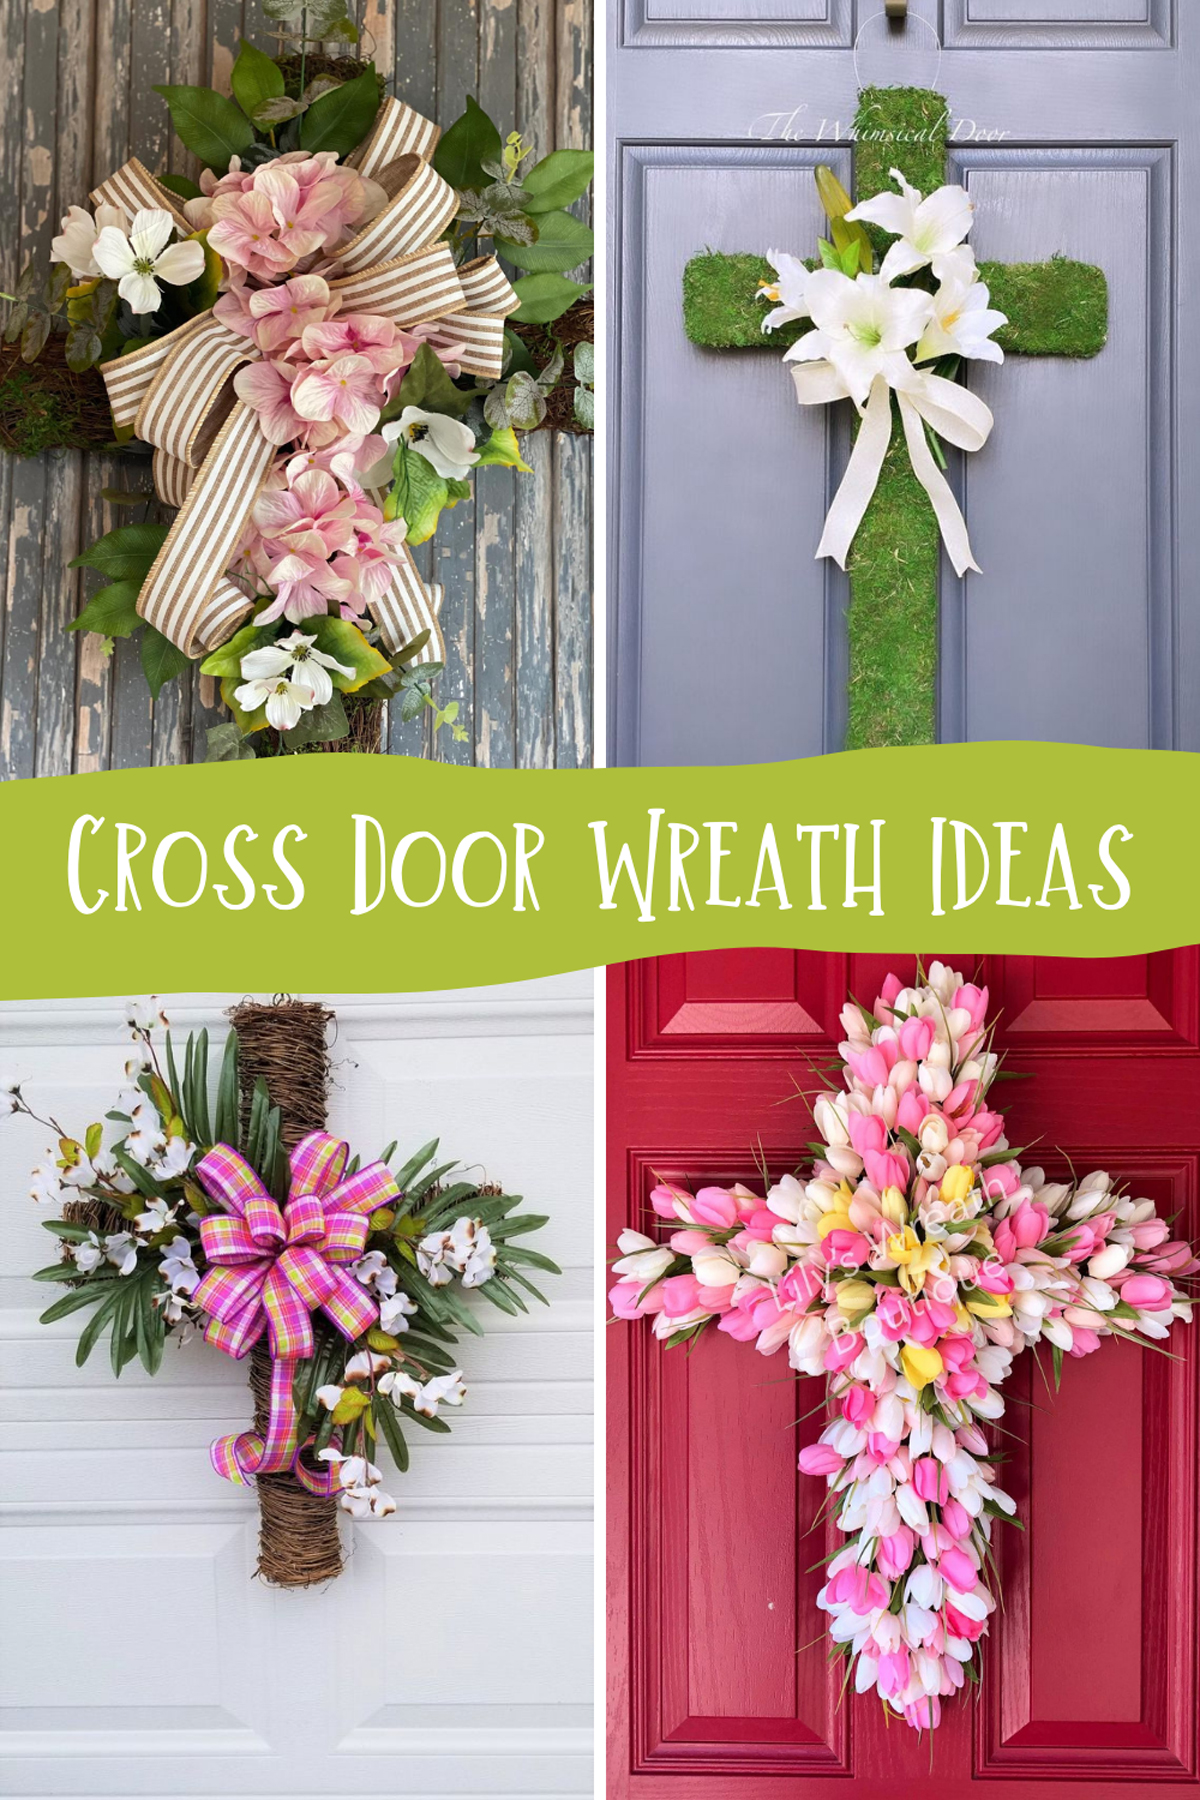 Cross Door Wreath Ideas